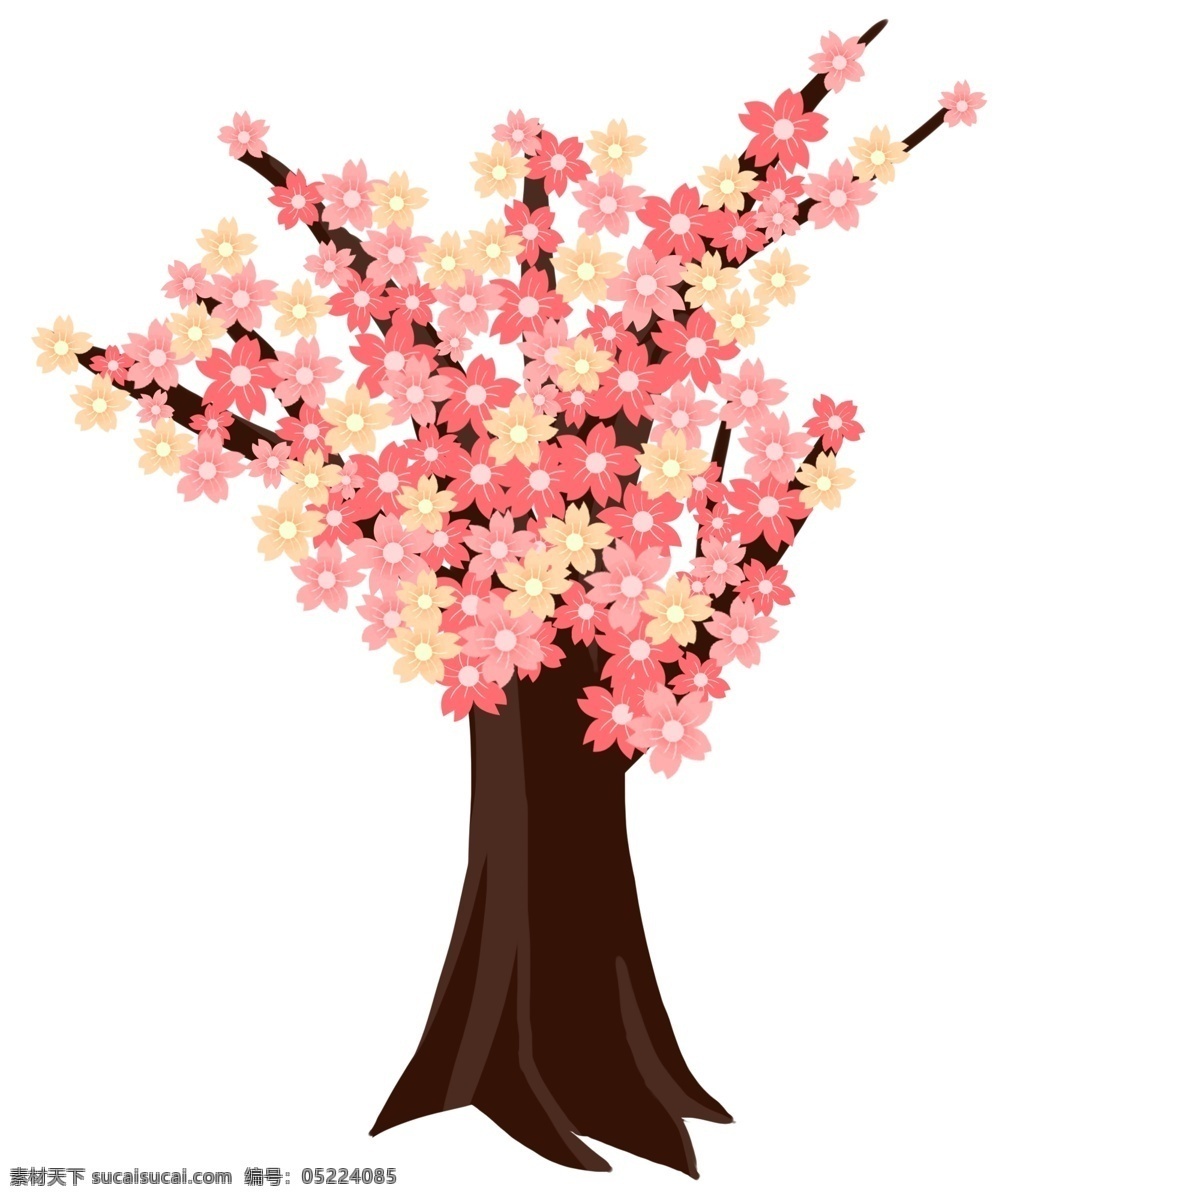 樱花 花朵 卡通 插画 卡通插画 樱花插画 花朵插画 鲜花 花束 植物樱花 粉色的樱花 日本的樱花